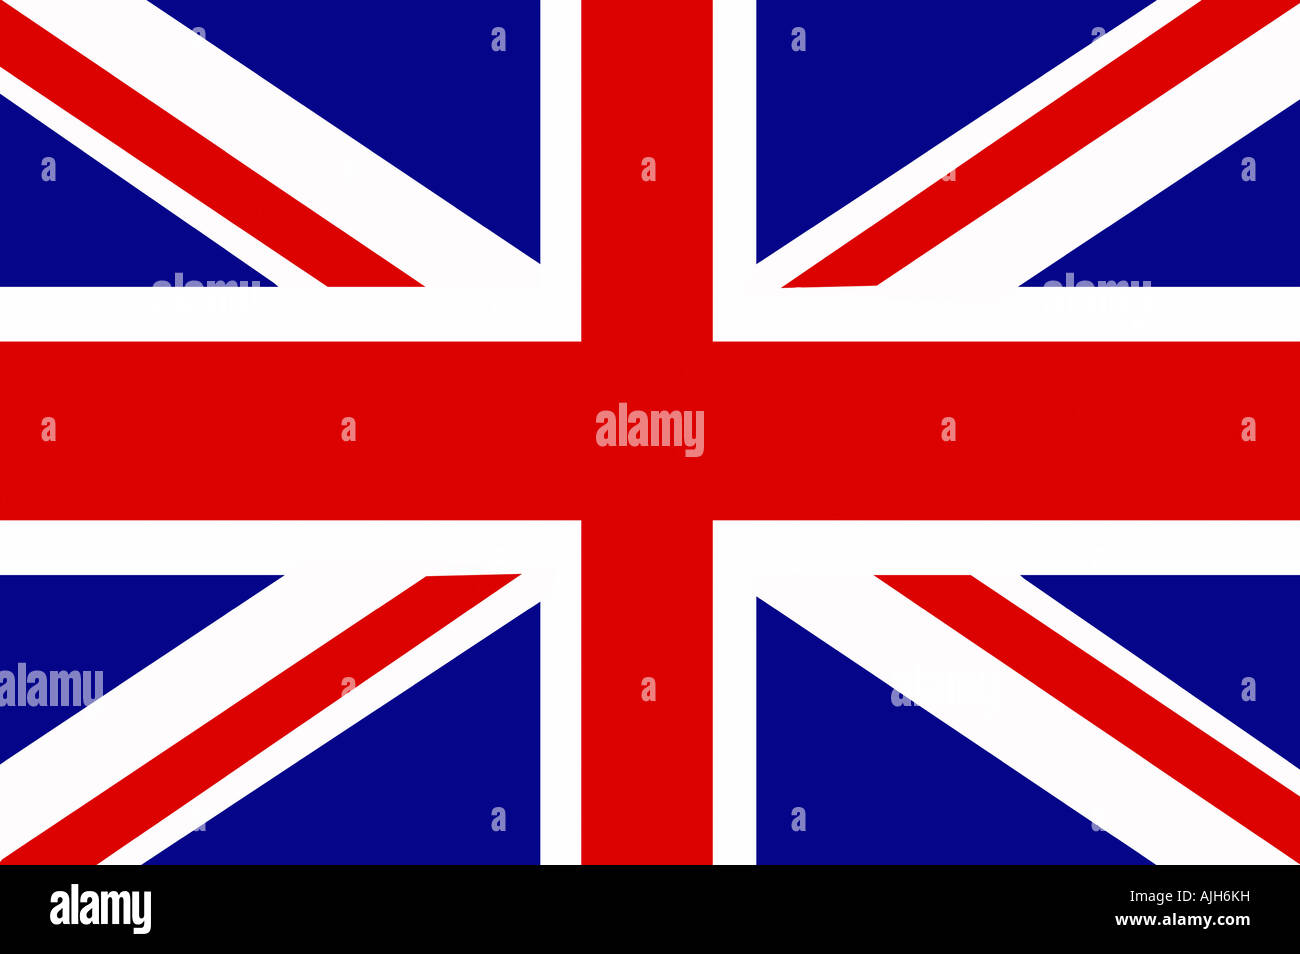 Union Jack flag illustration. National flag of the United Kingdom Stock Photo